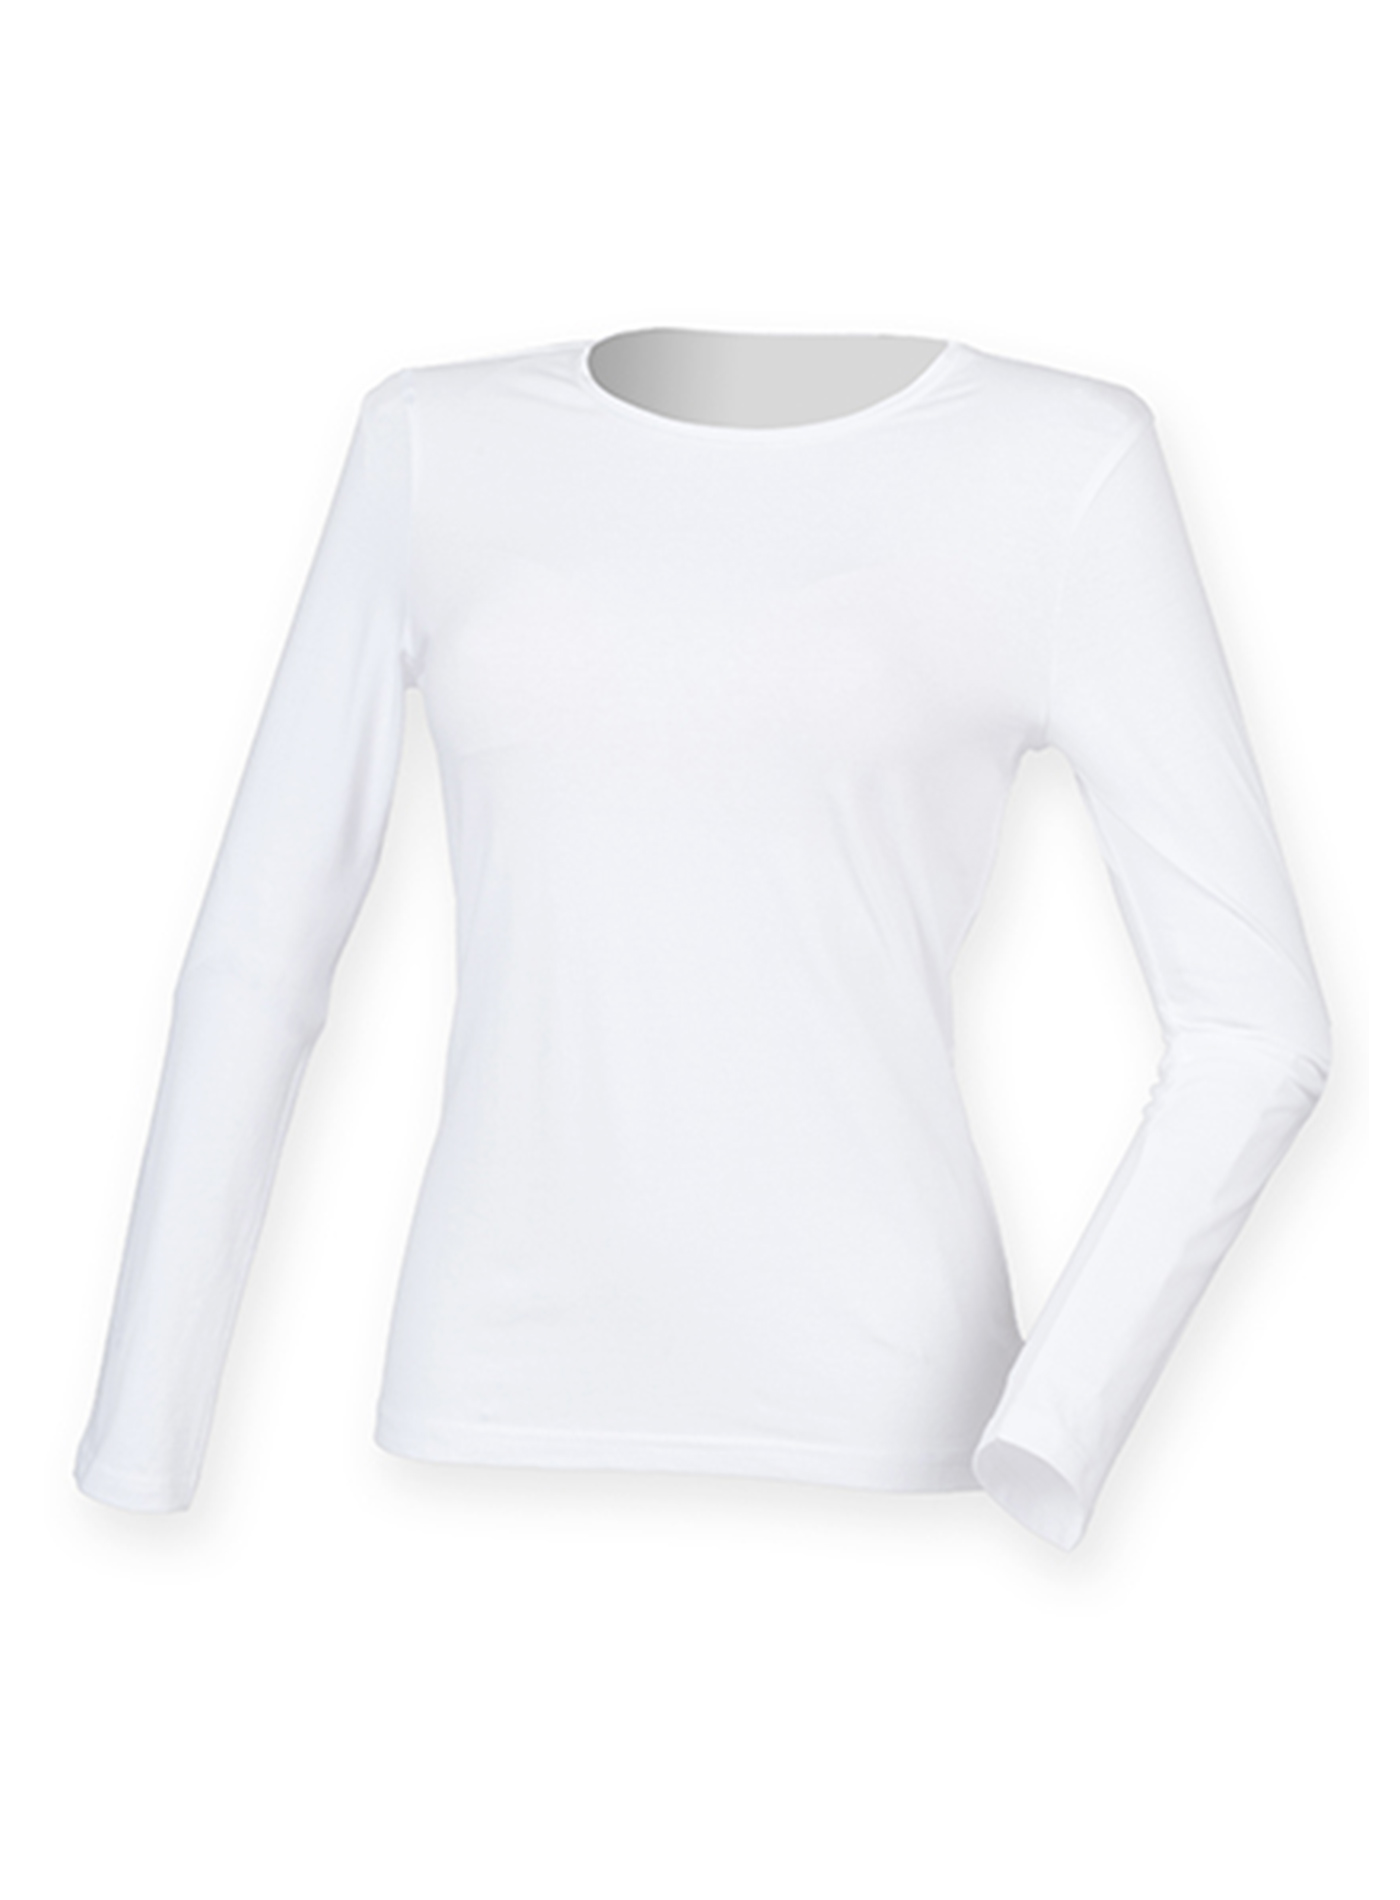 Dámské tričko s dlouhým rukávem Skinnifit Feels Good - Bílá XL